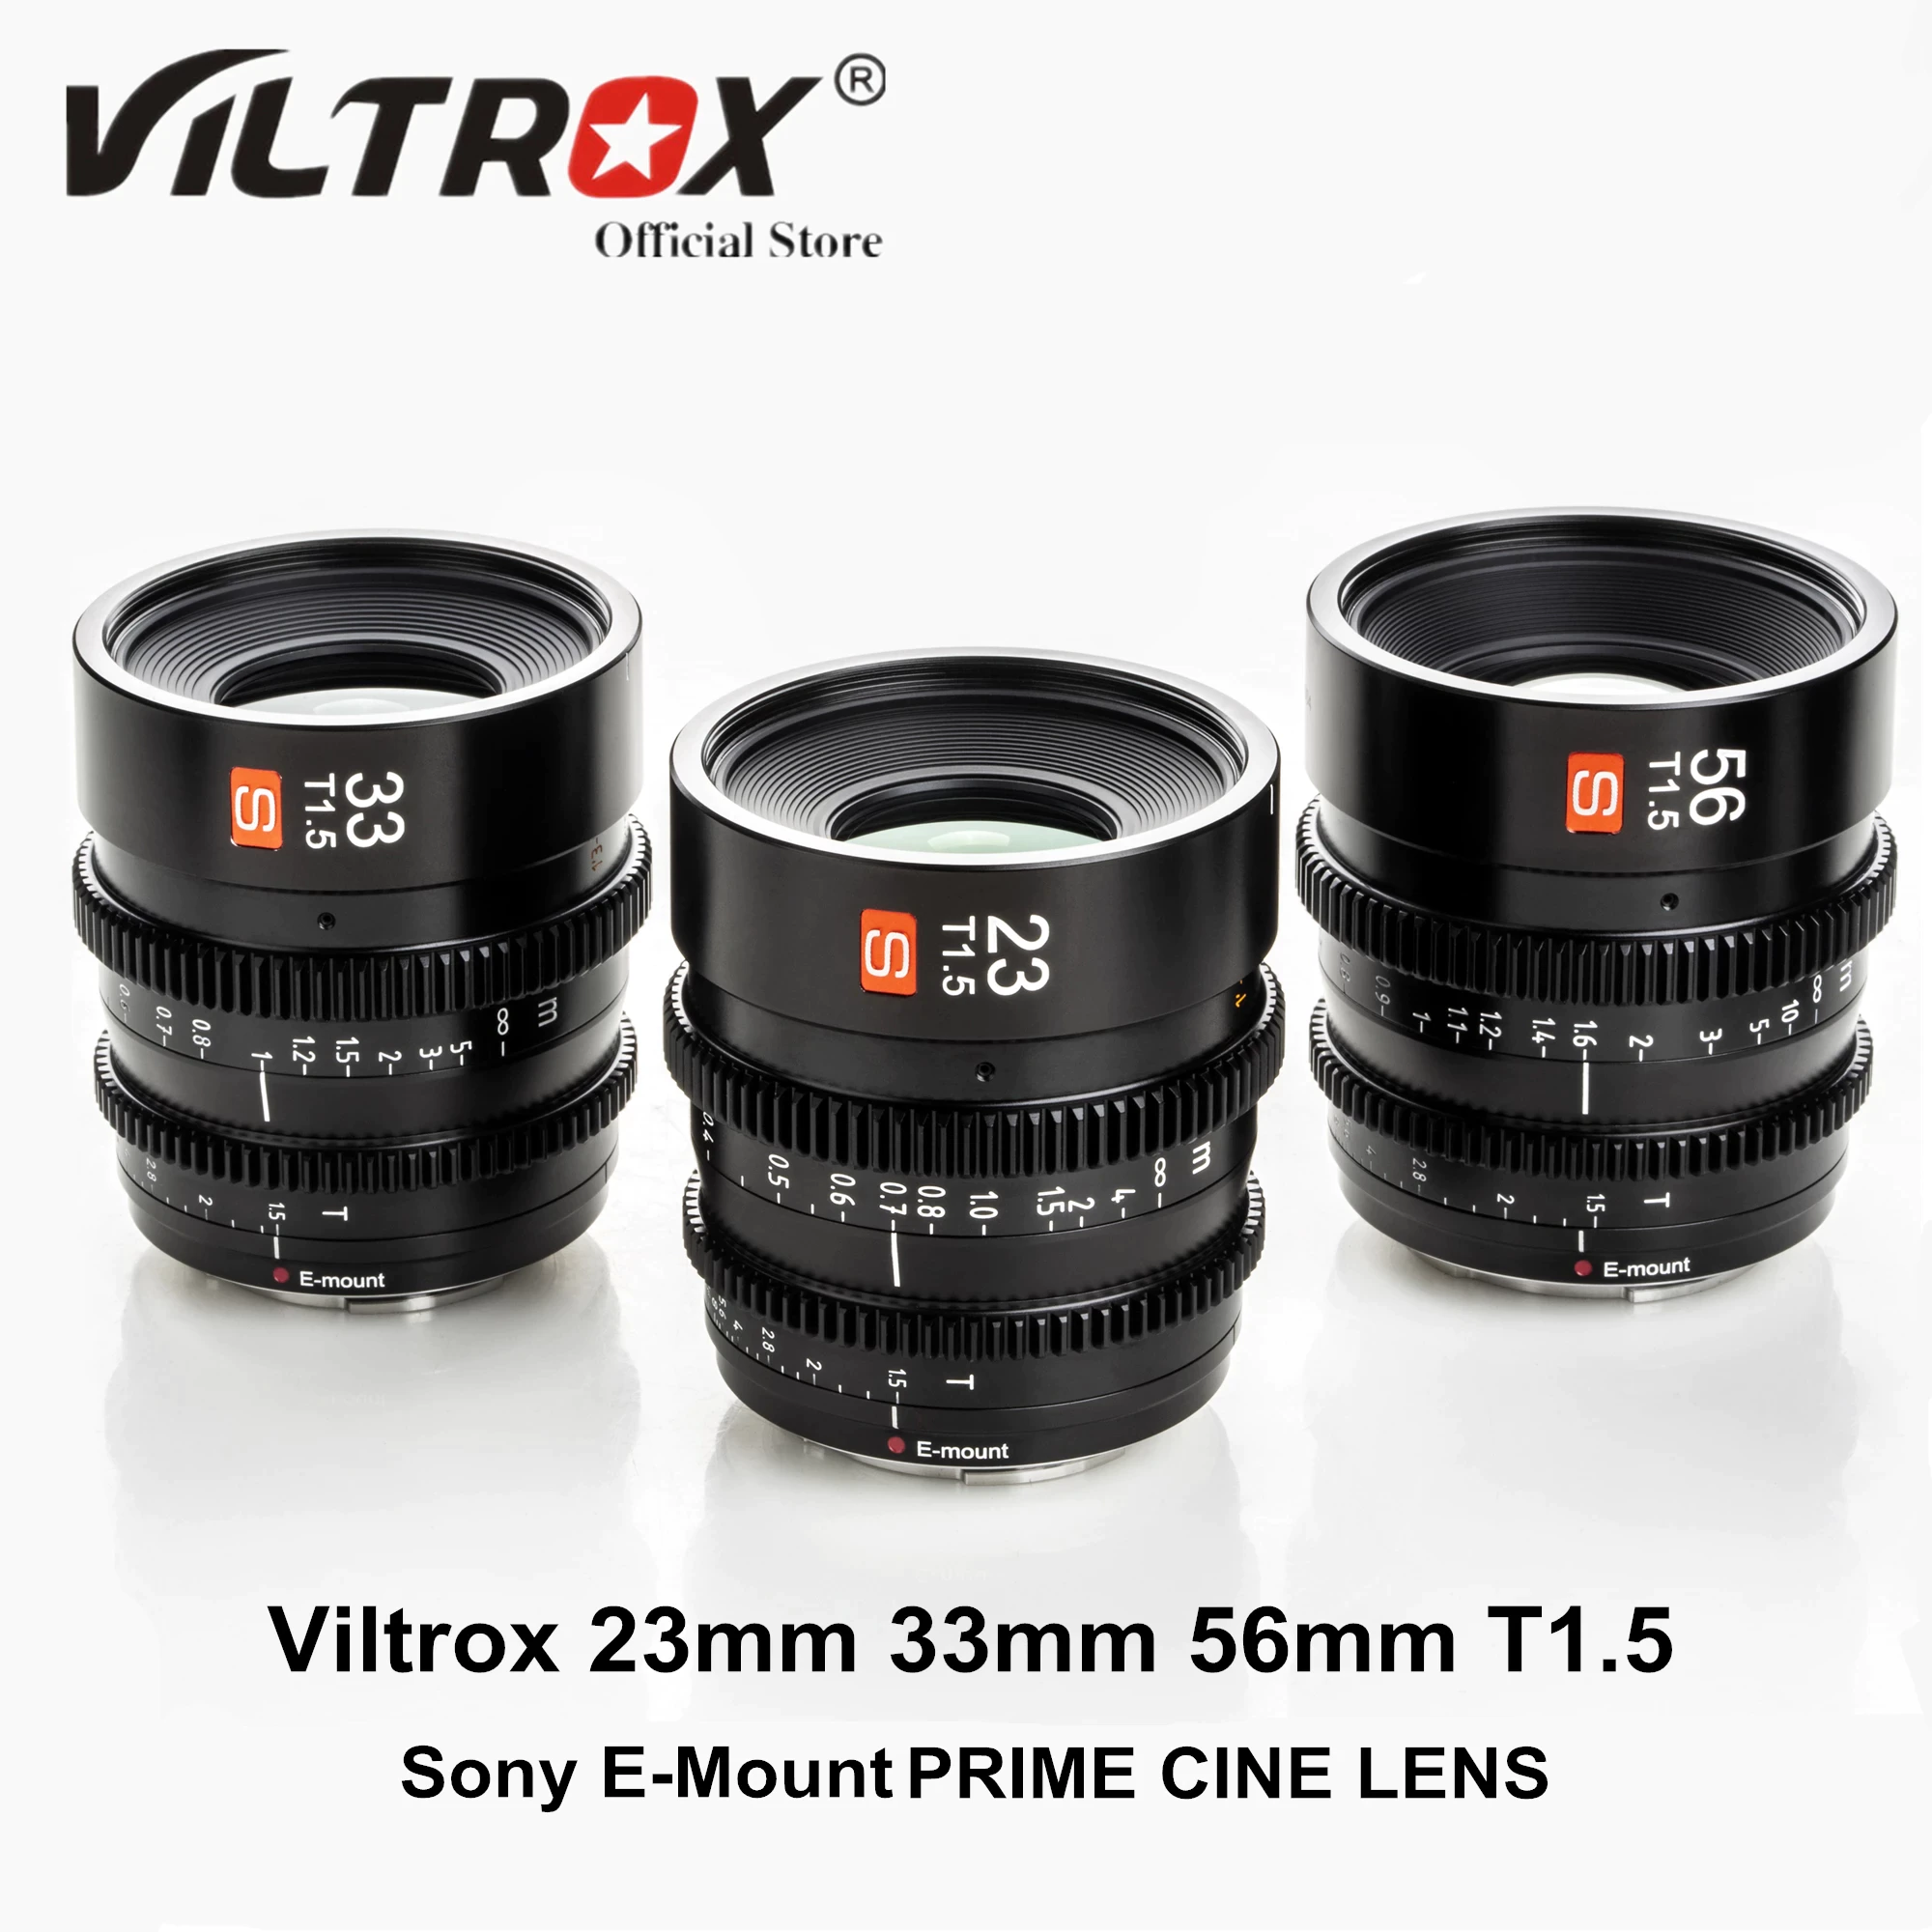 Viltrox 23mm 33mm 56mm T1.5 Objectif cinéma grande ouverture mise au point manuelle Prime Mini objectif cinéma faible distorsion tournage Vlogger pour